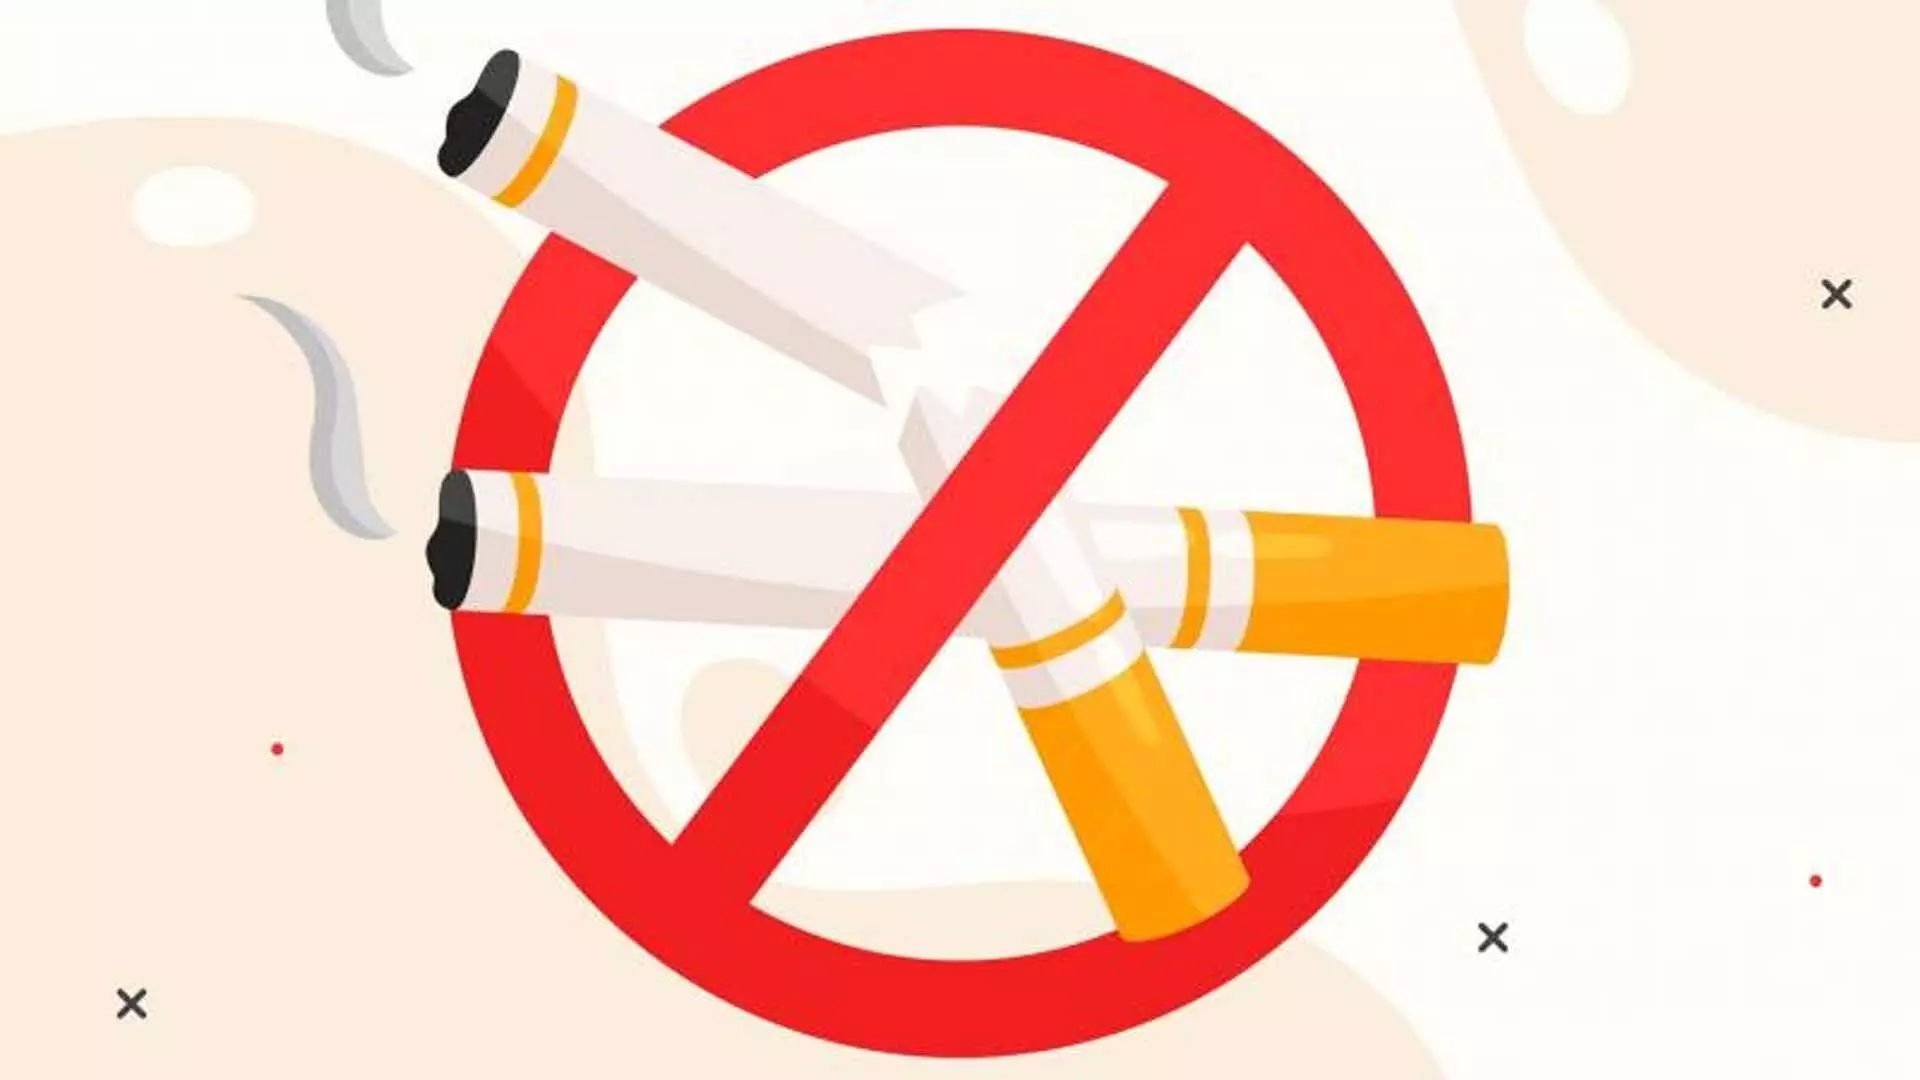 Telangana: 15 वर्ष से अधिक आयु के 22.3 प्रतिशत पुरुष तम्बाकू का करते हैं सेवन